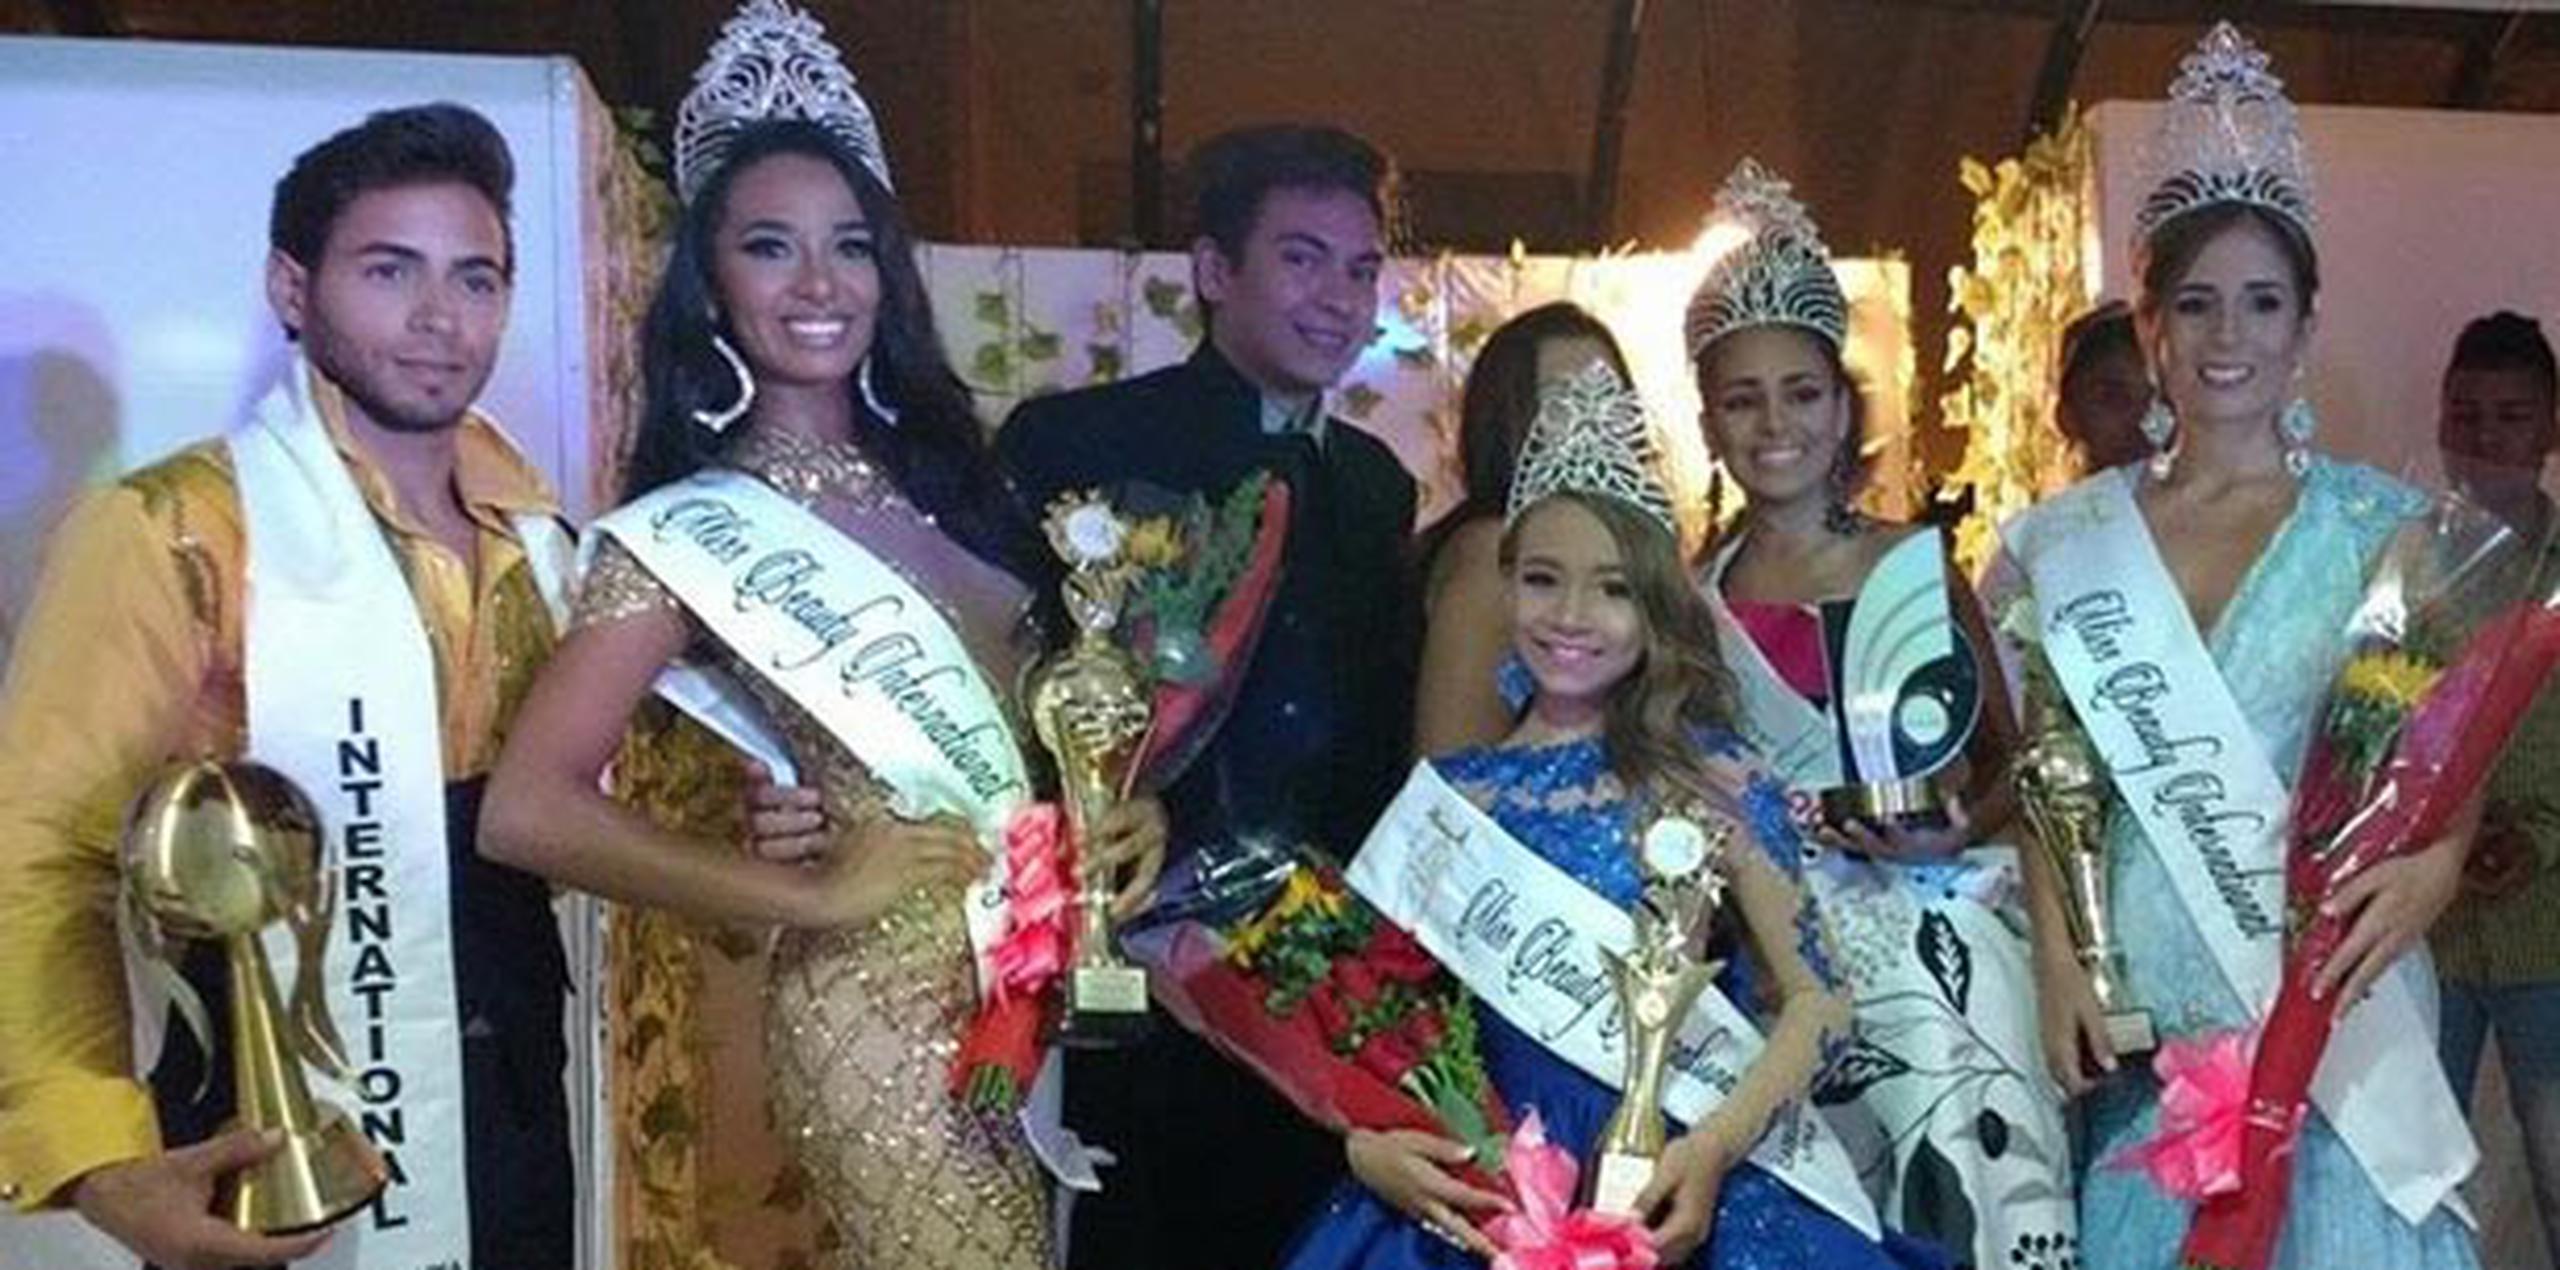 Los jóvenes dominaron todas las categorías de los concursos Miss & Mr. Beauty International 2016 y World Model International 2016. (Suministrada)